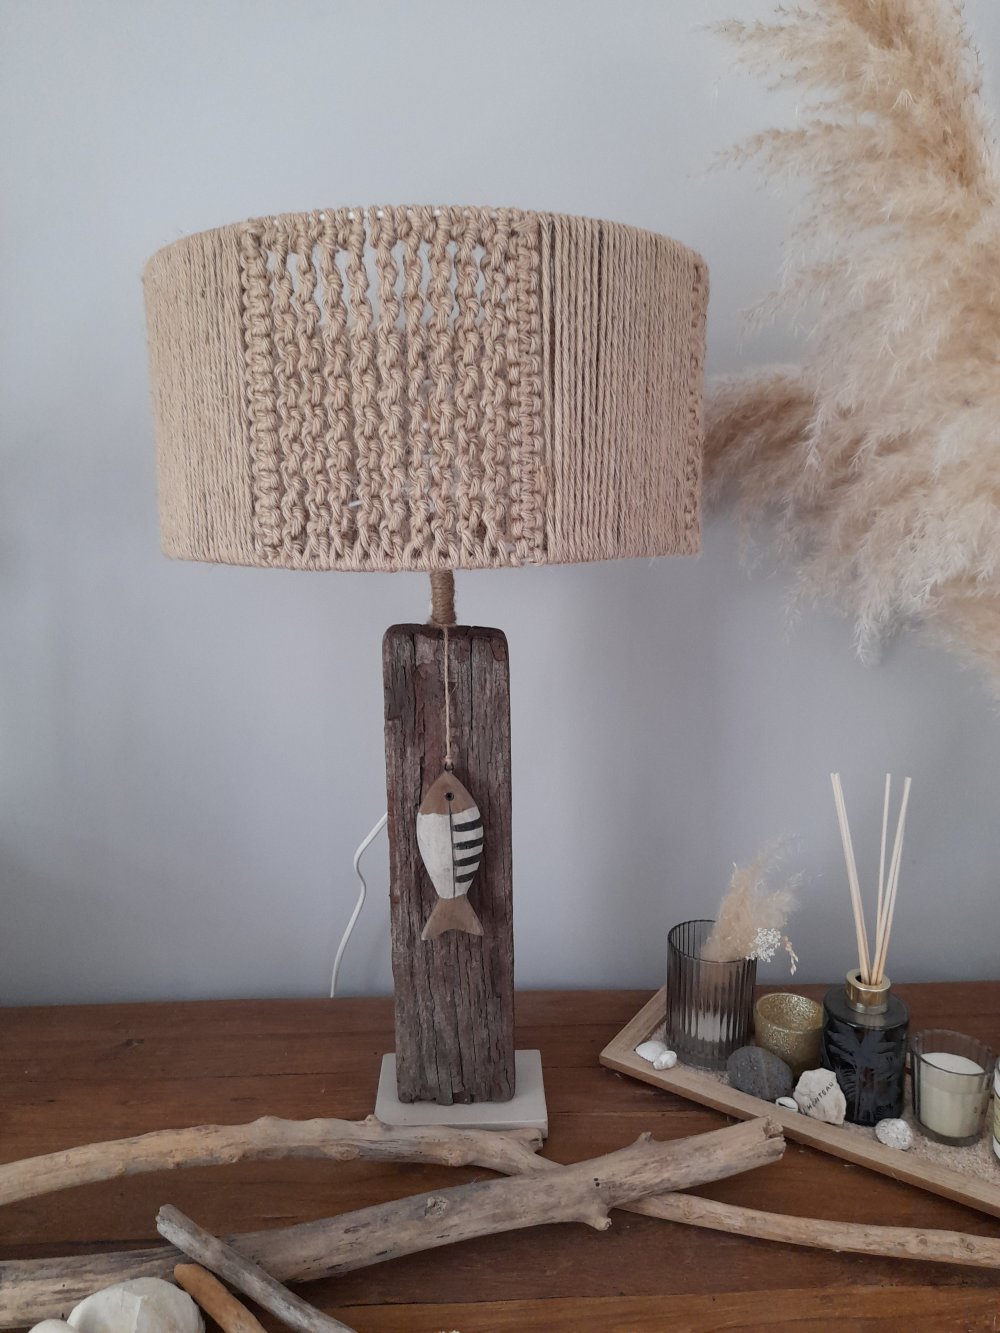 10 Modèles de lampadaire crées avec du bois flotté! - Bricolage